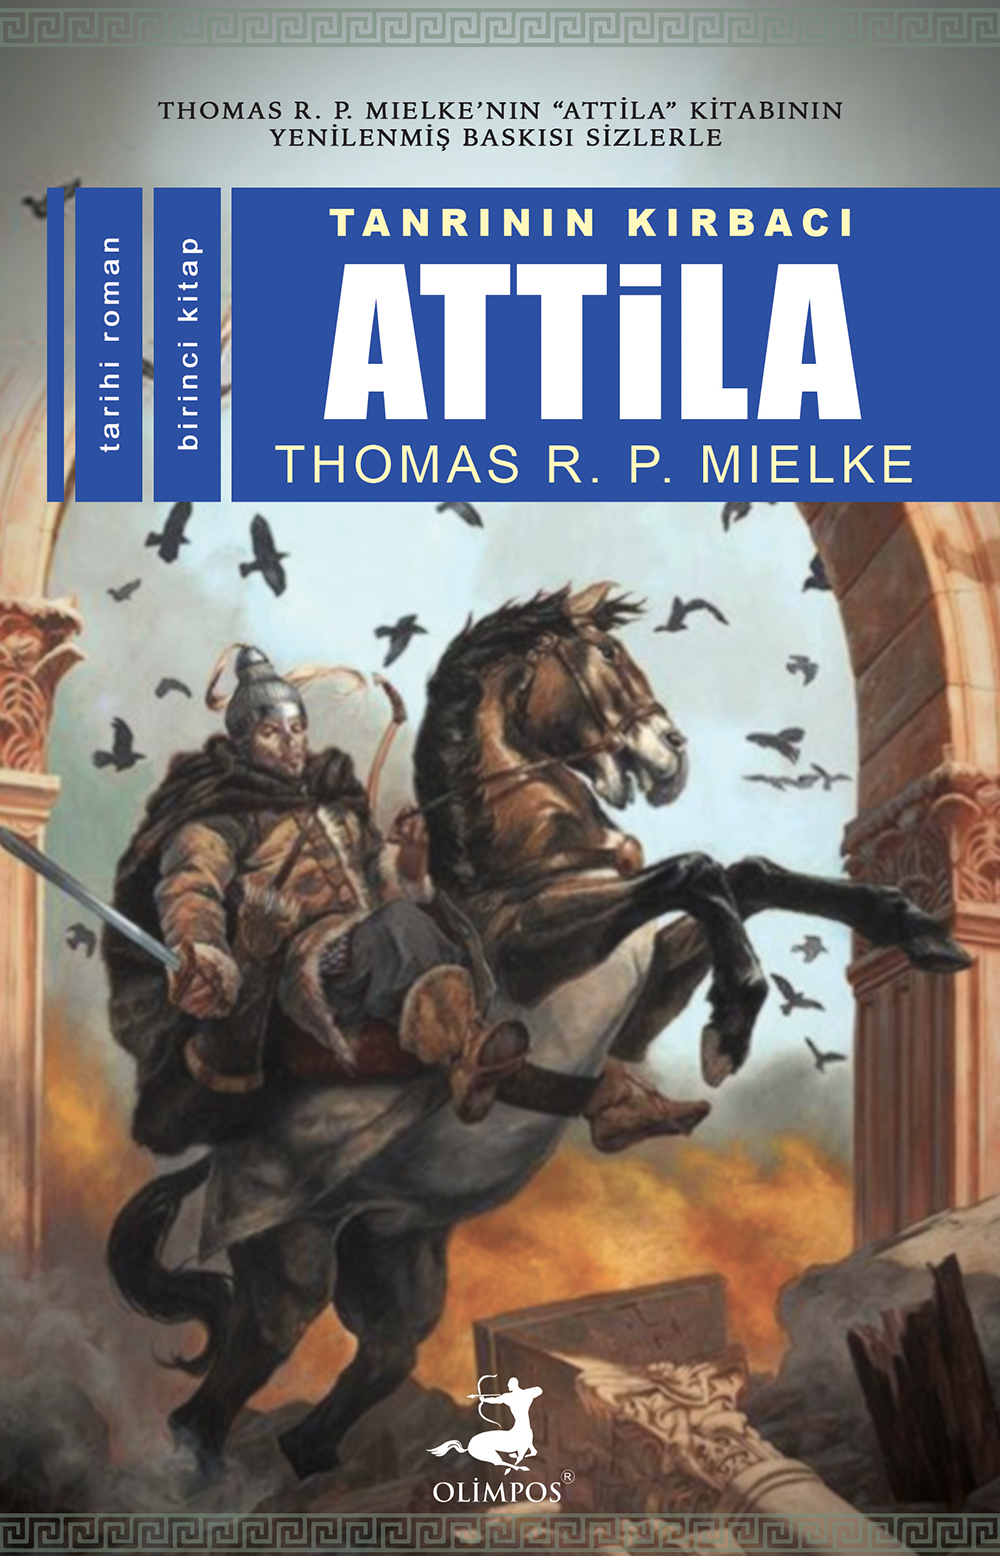 Tanrının Kırbacı Attila-I